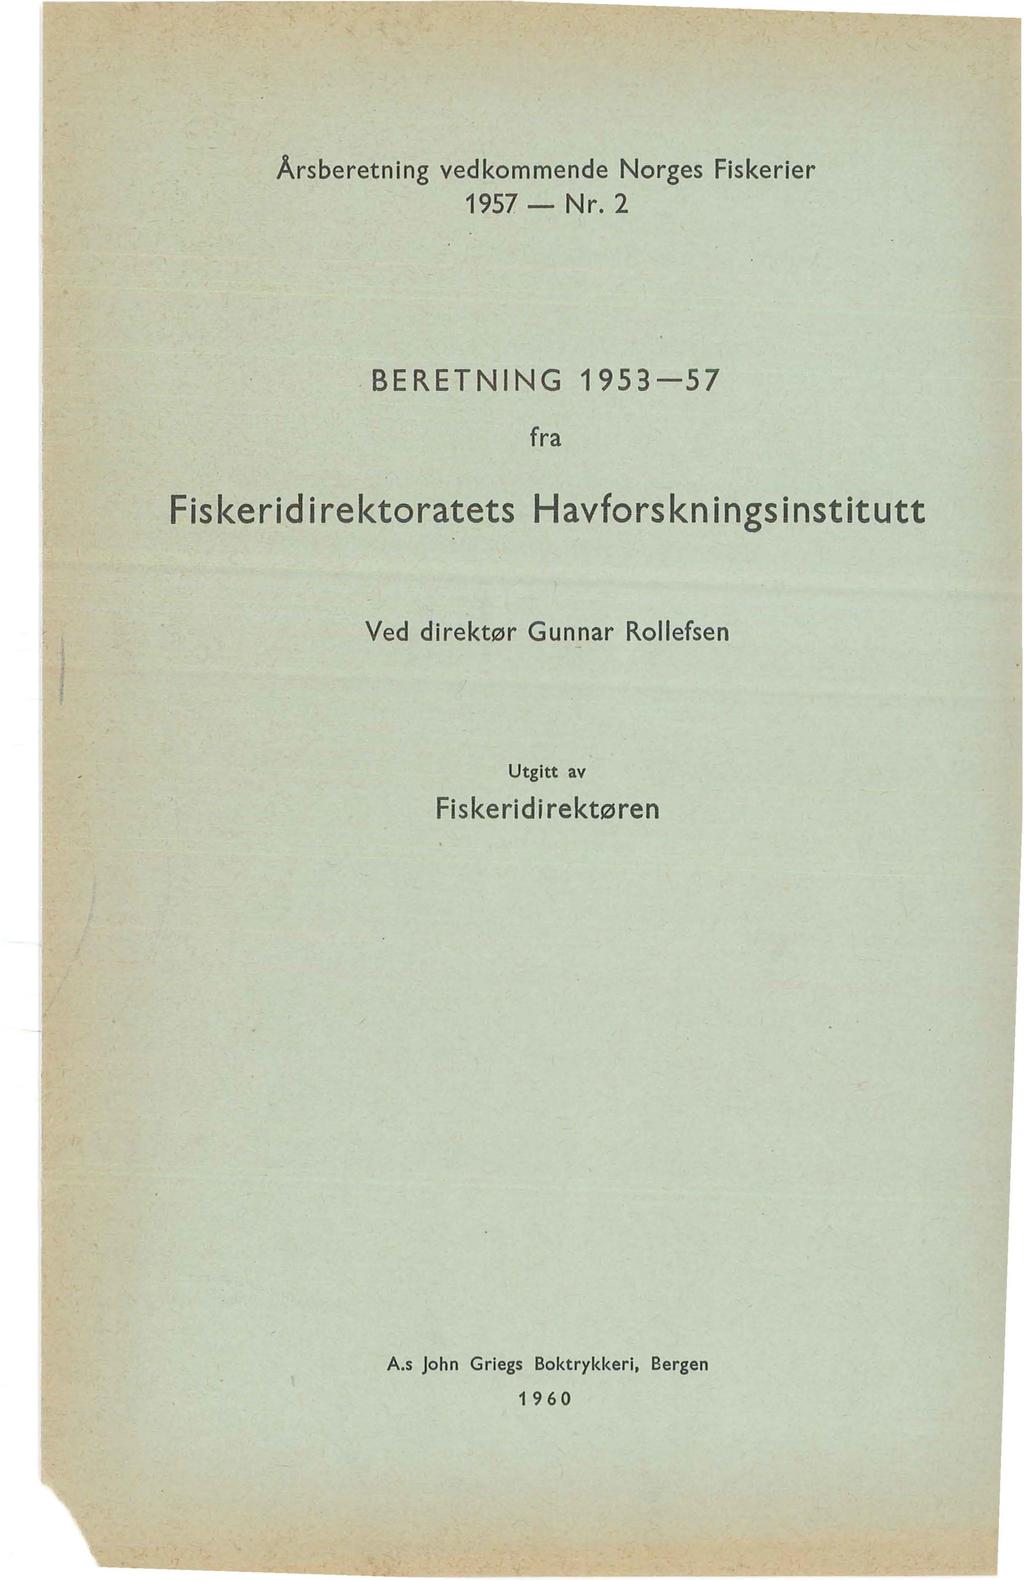 Årsberetning vedkommende Norges Fiskerier 1957- Nr.